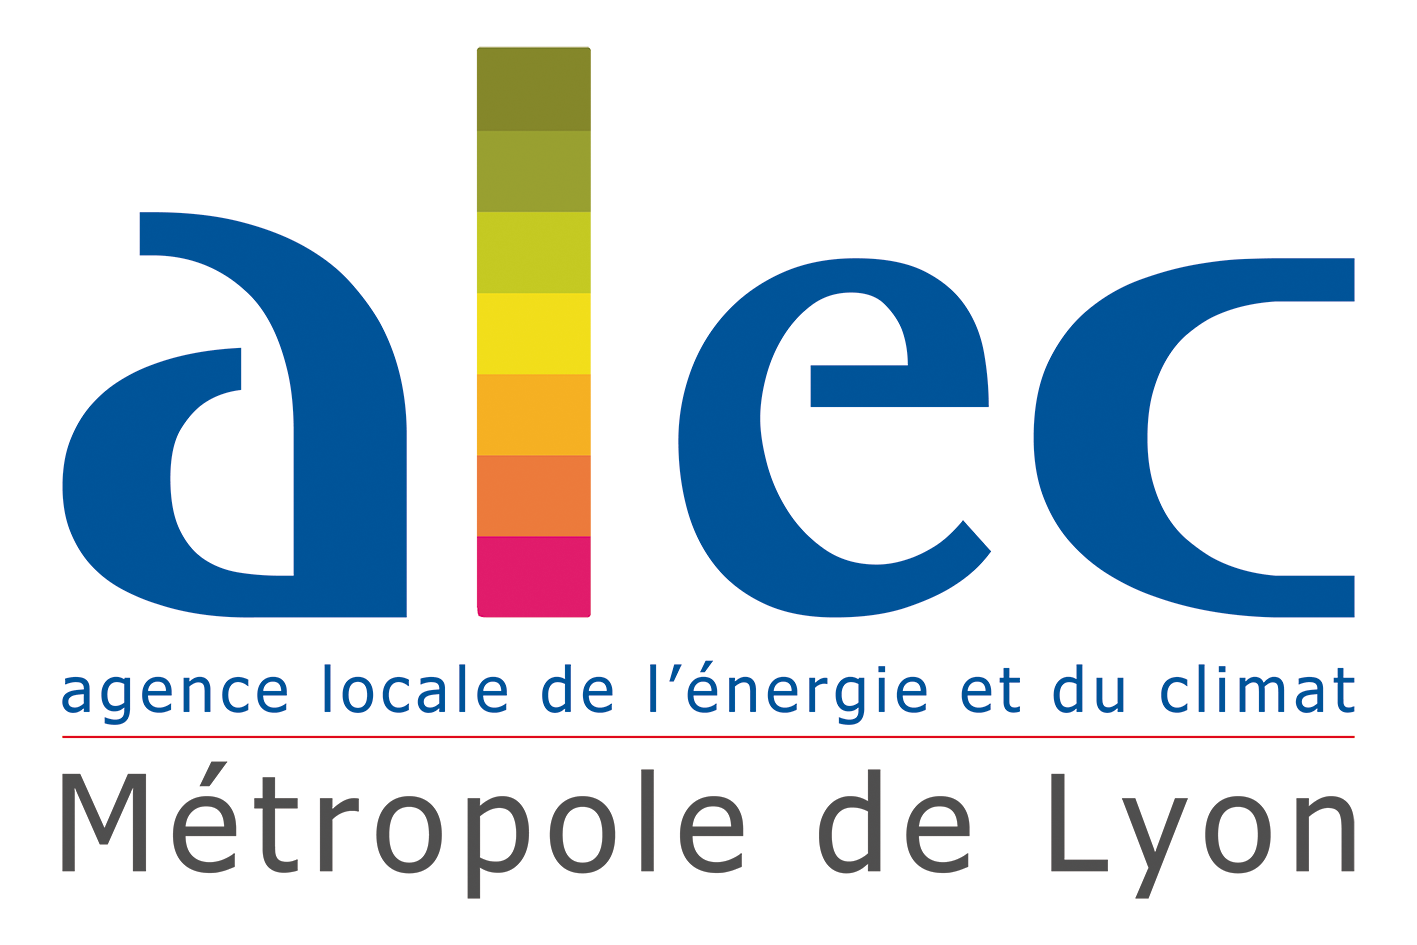 Logo ALEC